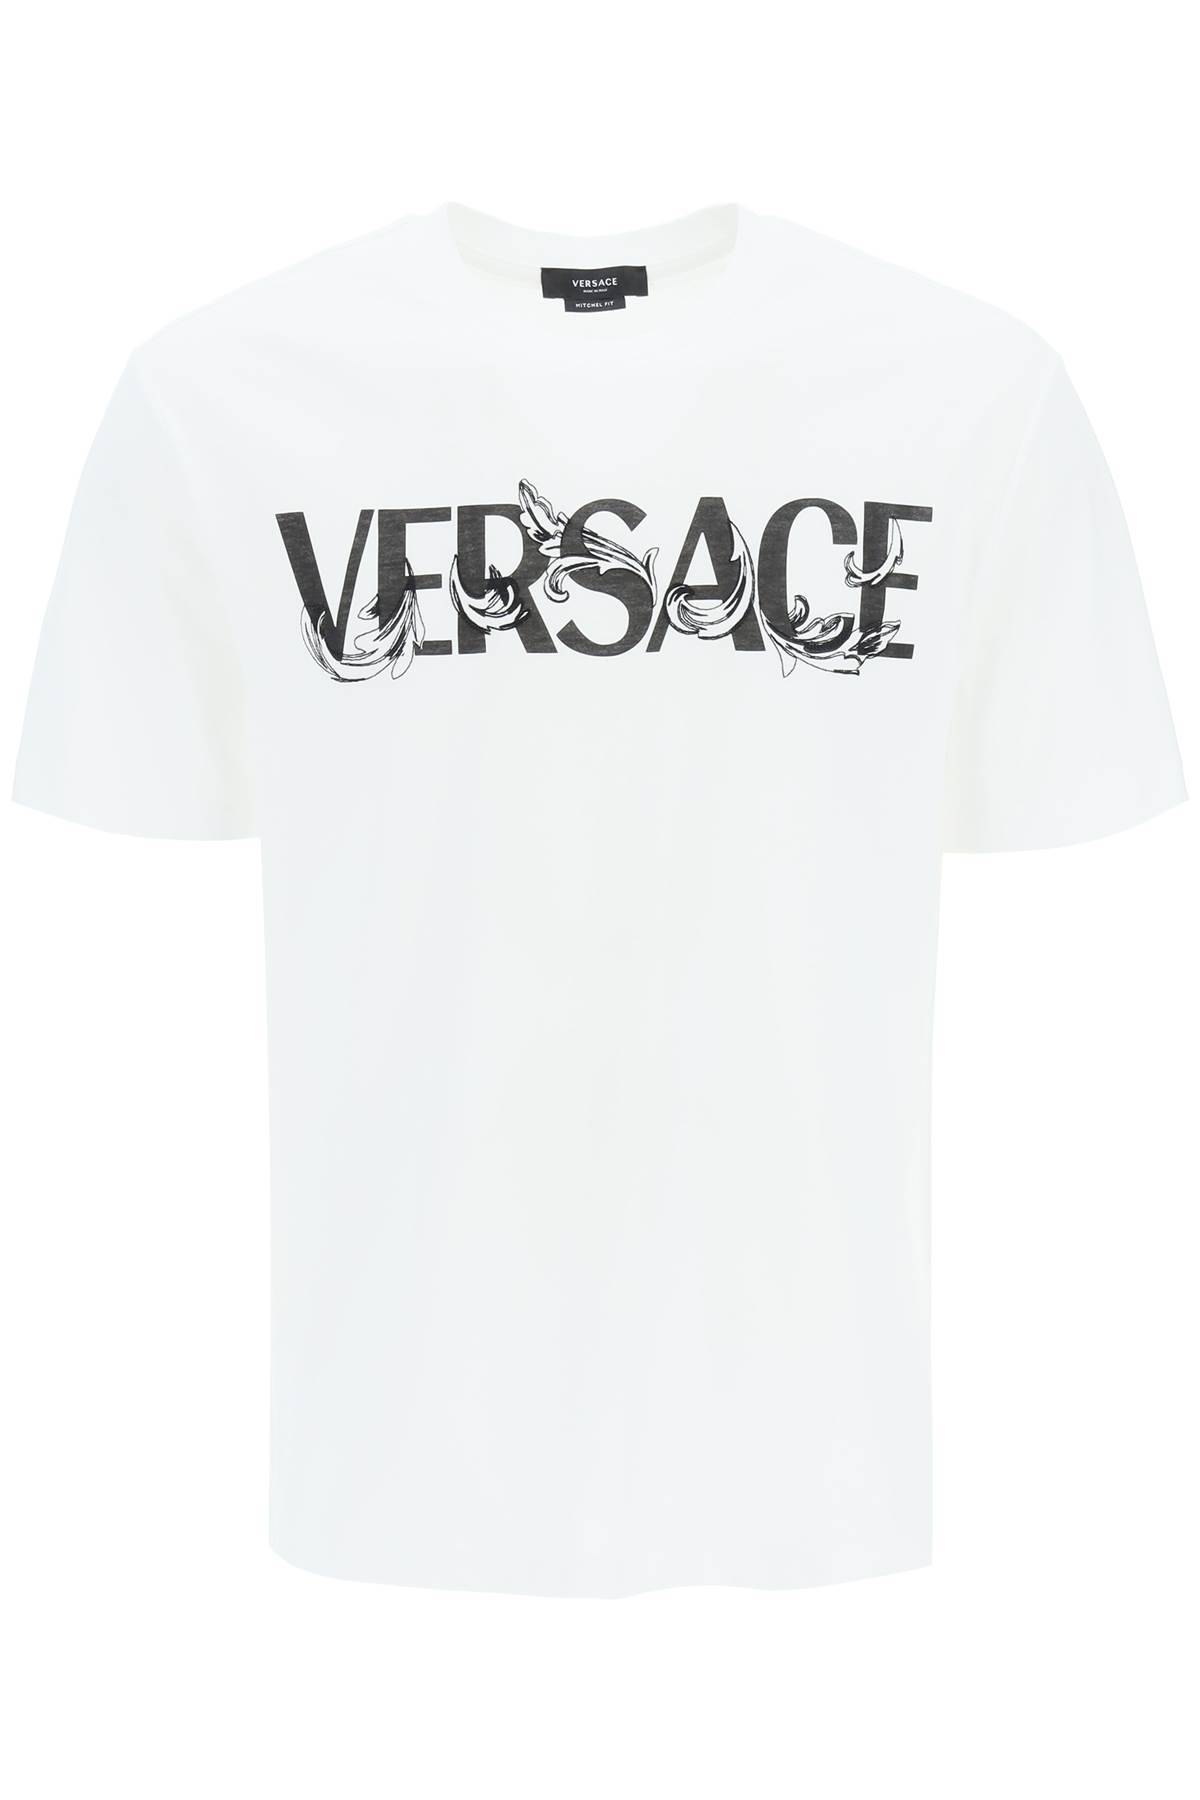 Versace VERSACE cotton logo t-shirt